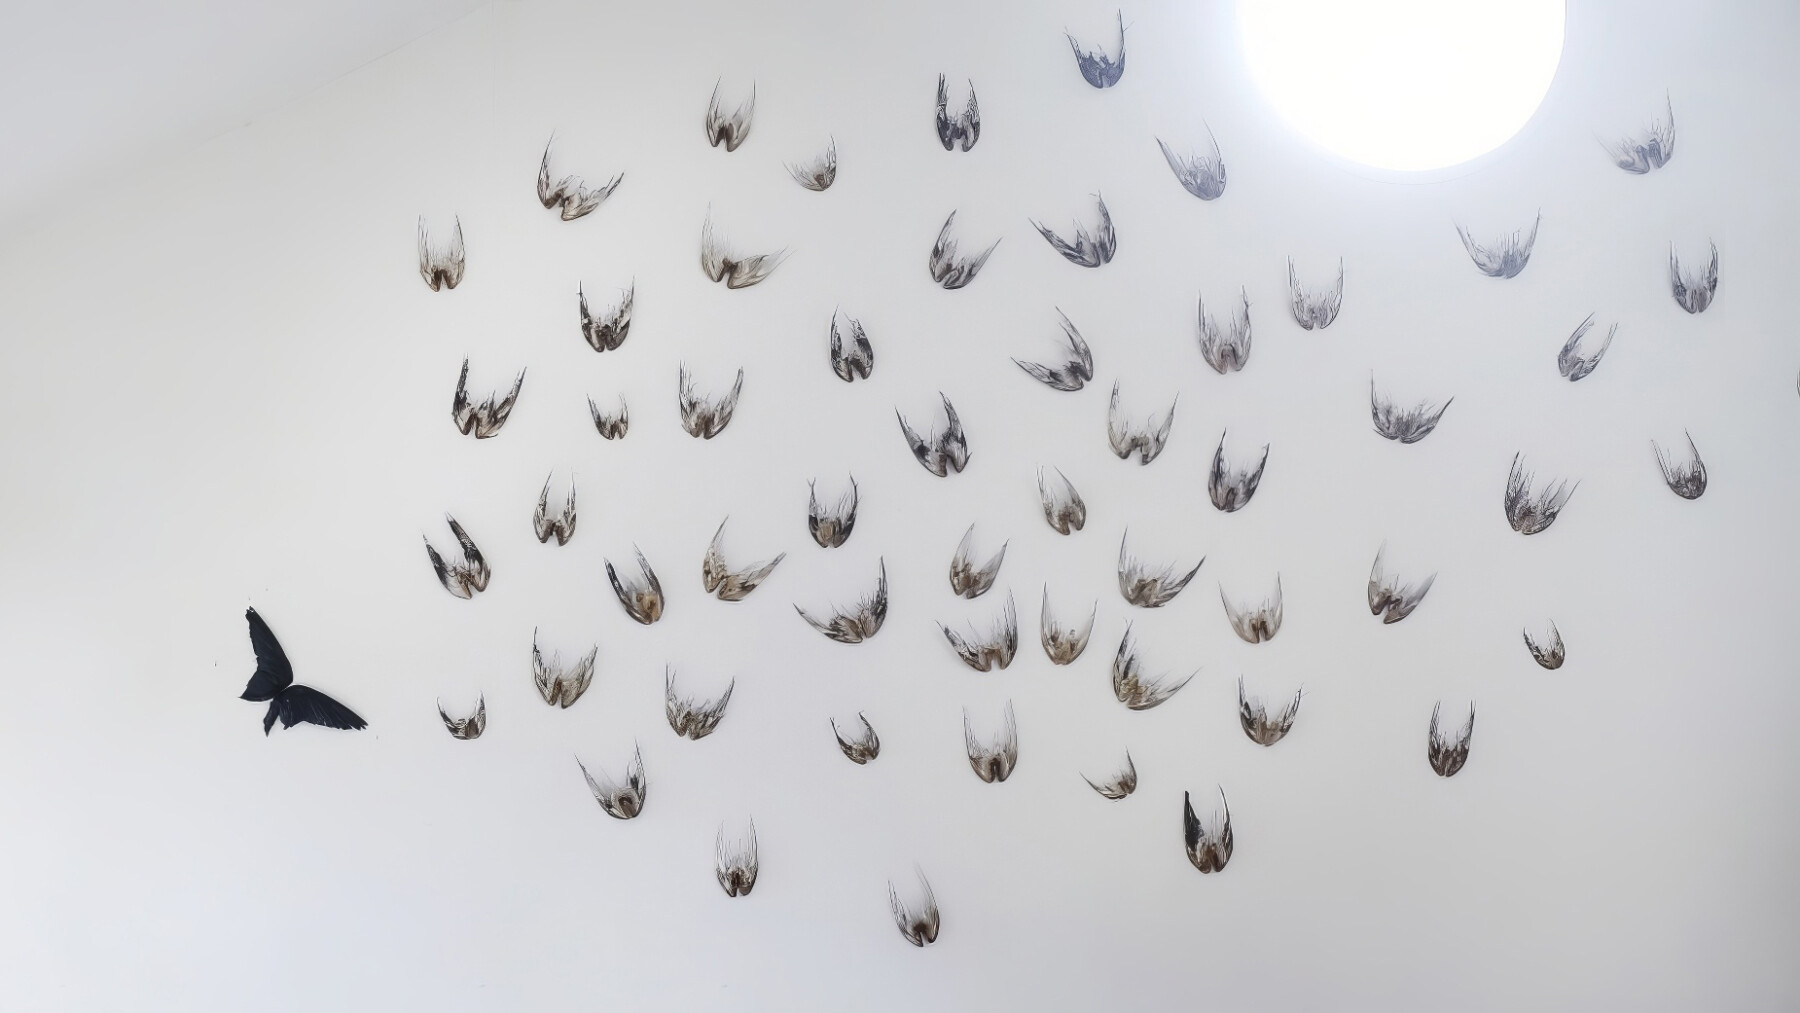 Dezenas de pares de asas de pássaros estão dispostas sobre um fundo branco.